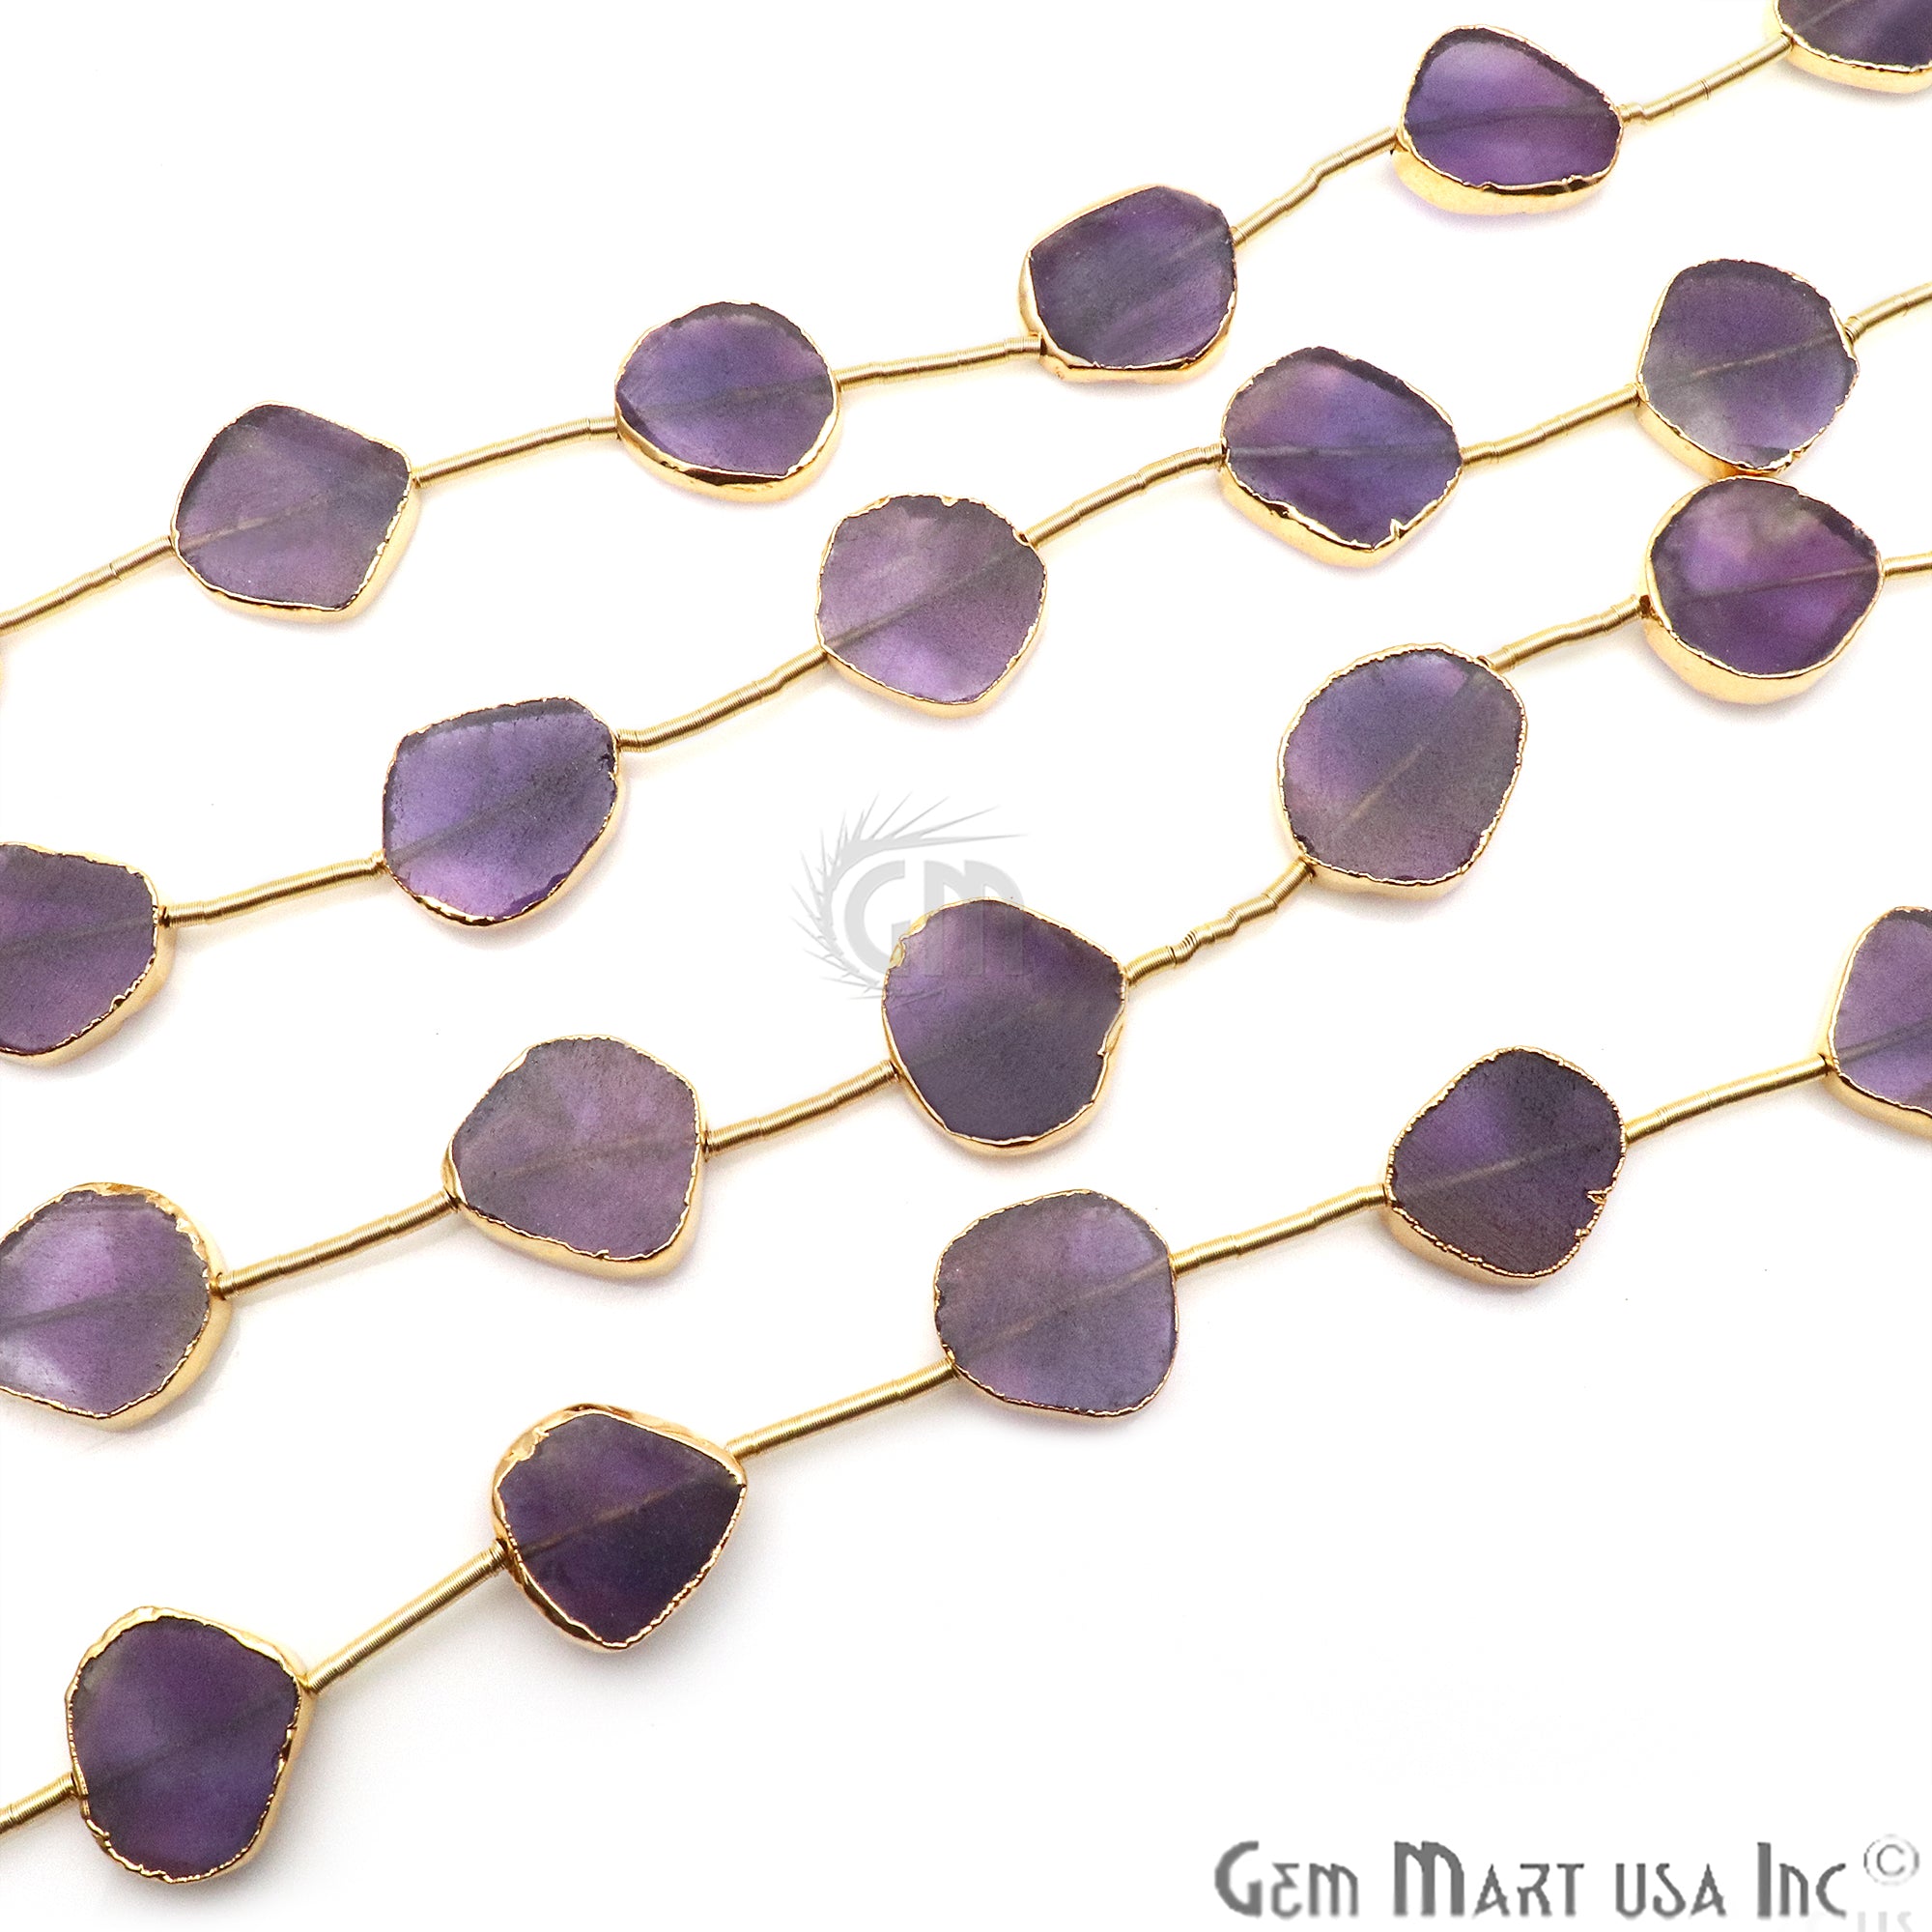 Amethyst Free Form 18x15mm Gold Edged Crafting Beads Gemstone Strands 9INCH - GemMartUSA